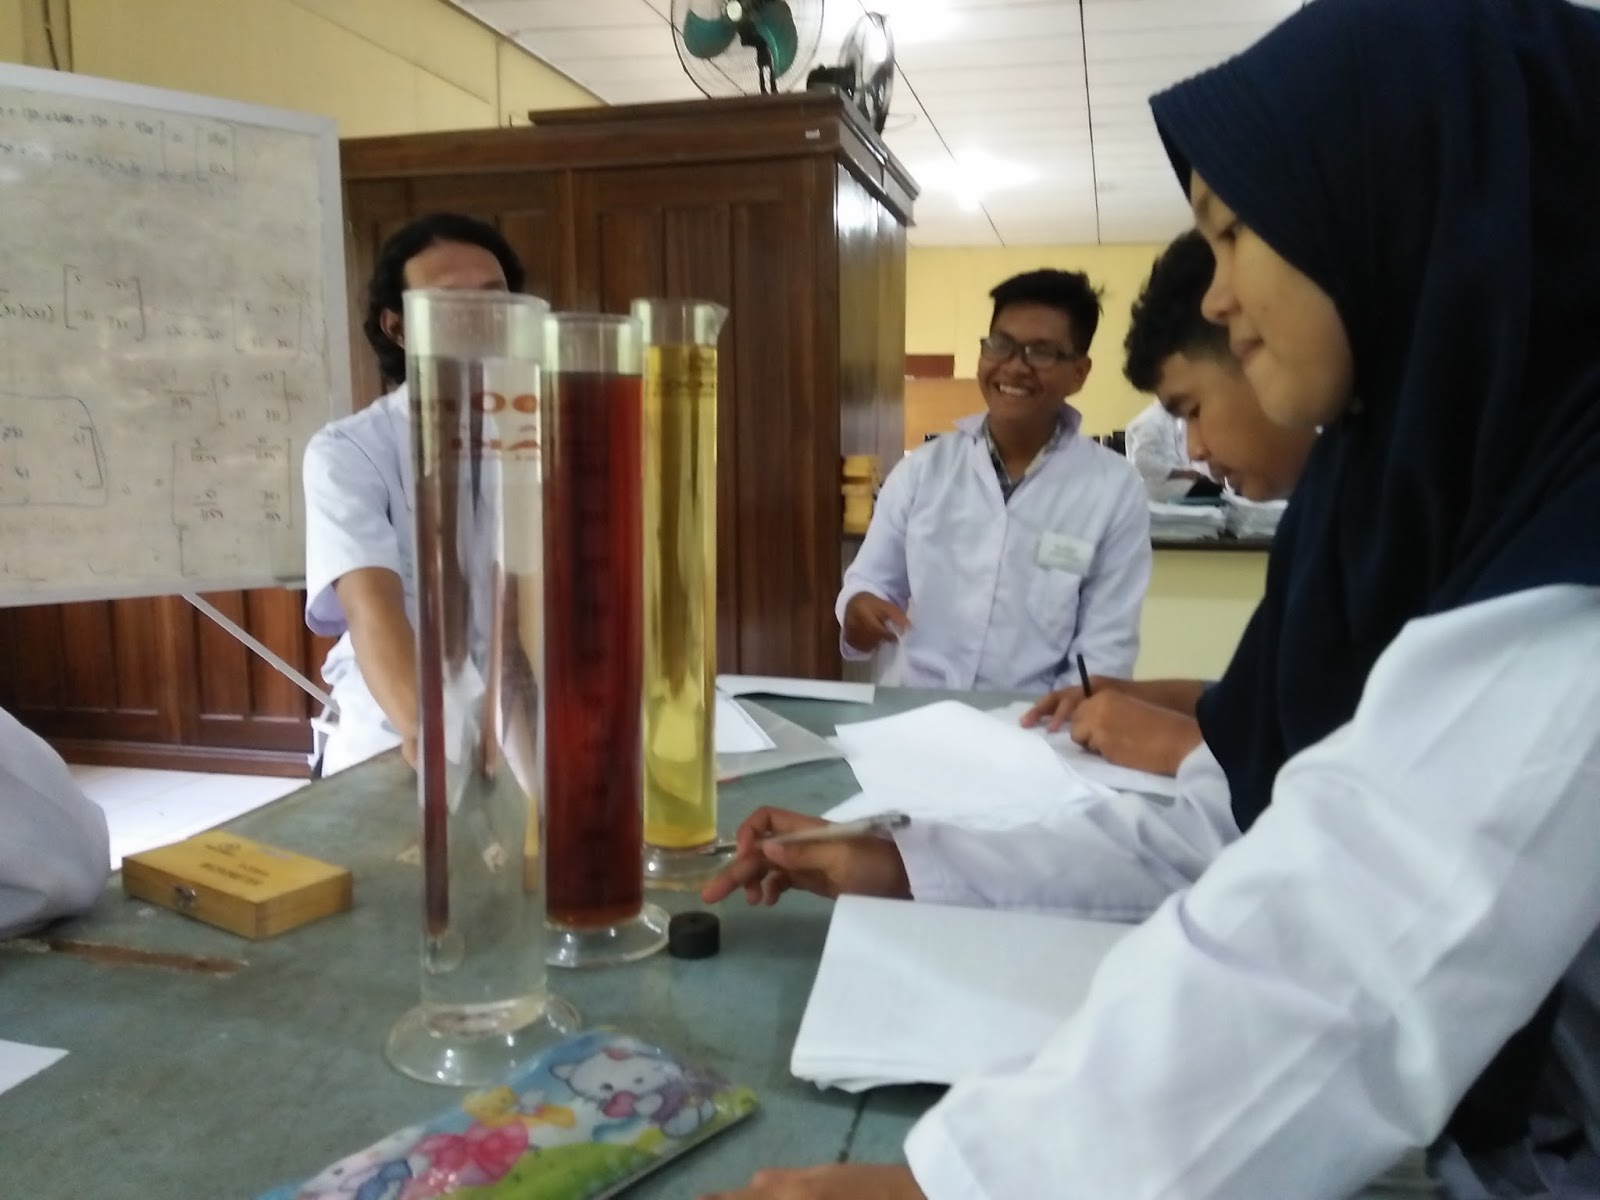 Praktikum Fisika yang dilakukan oleh mahasiswa baru jurusan Sistem Komputer Fakultas MIPA Universitas Tanjungpura Alhamdulillah dari awal modul yaitu